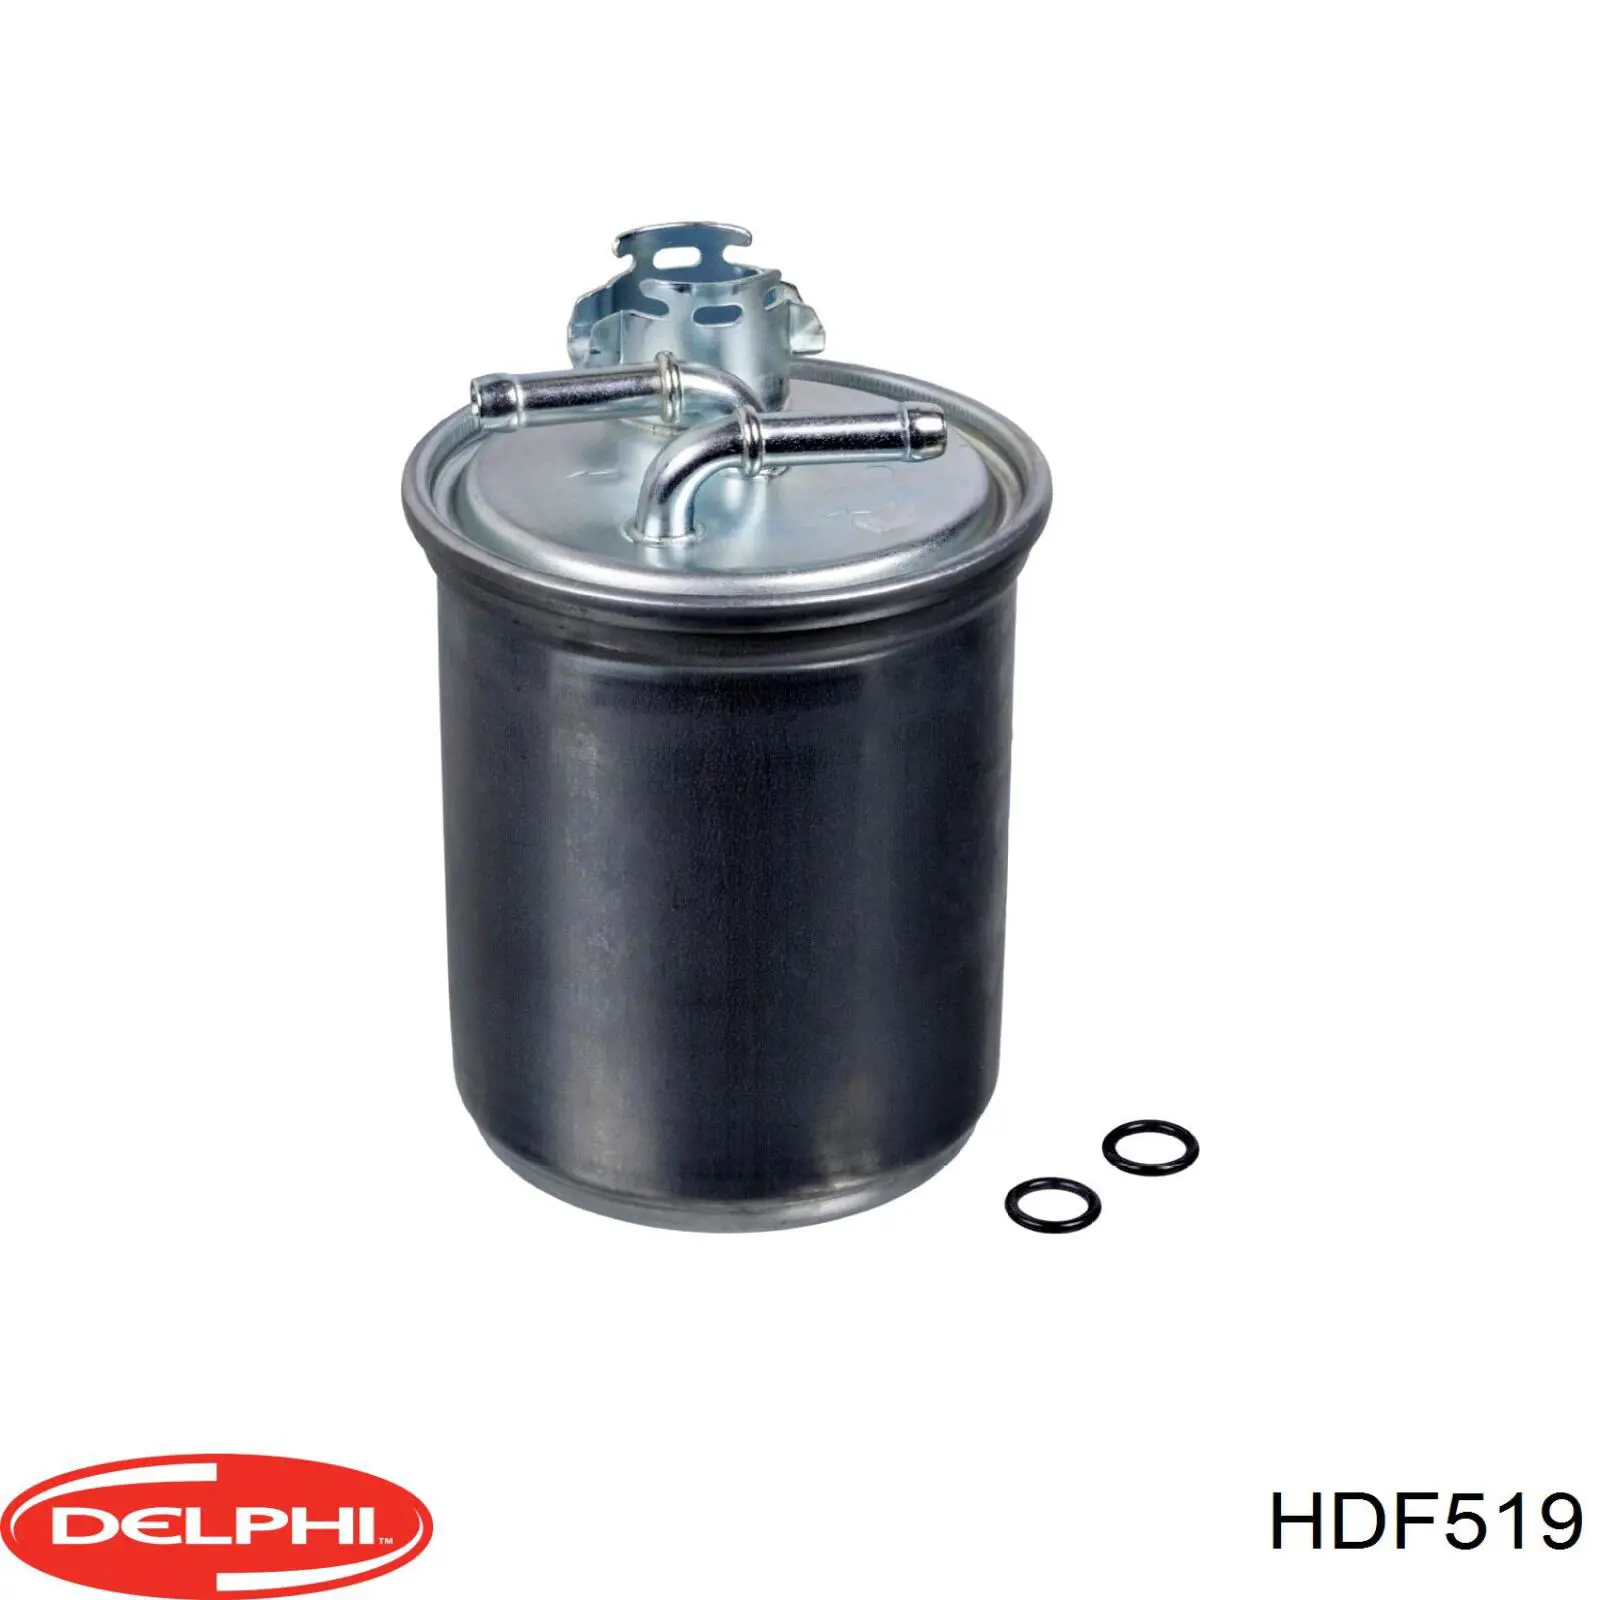 HDF519 Delphi filtro de combustible